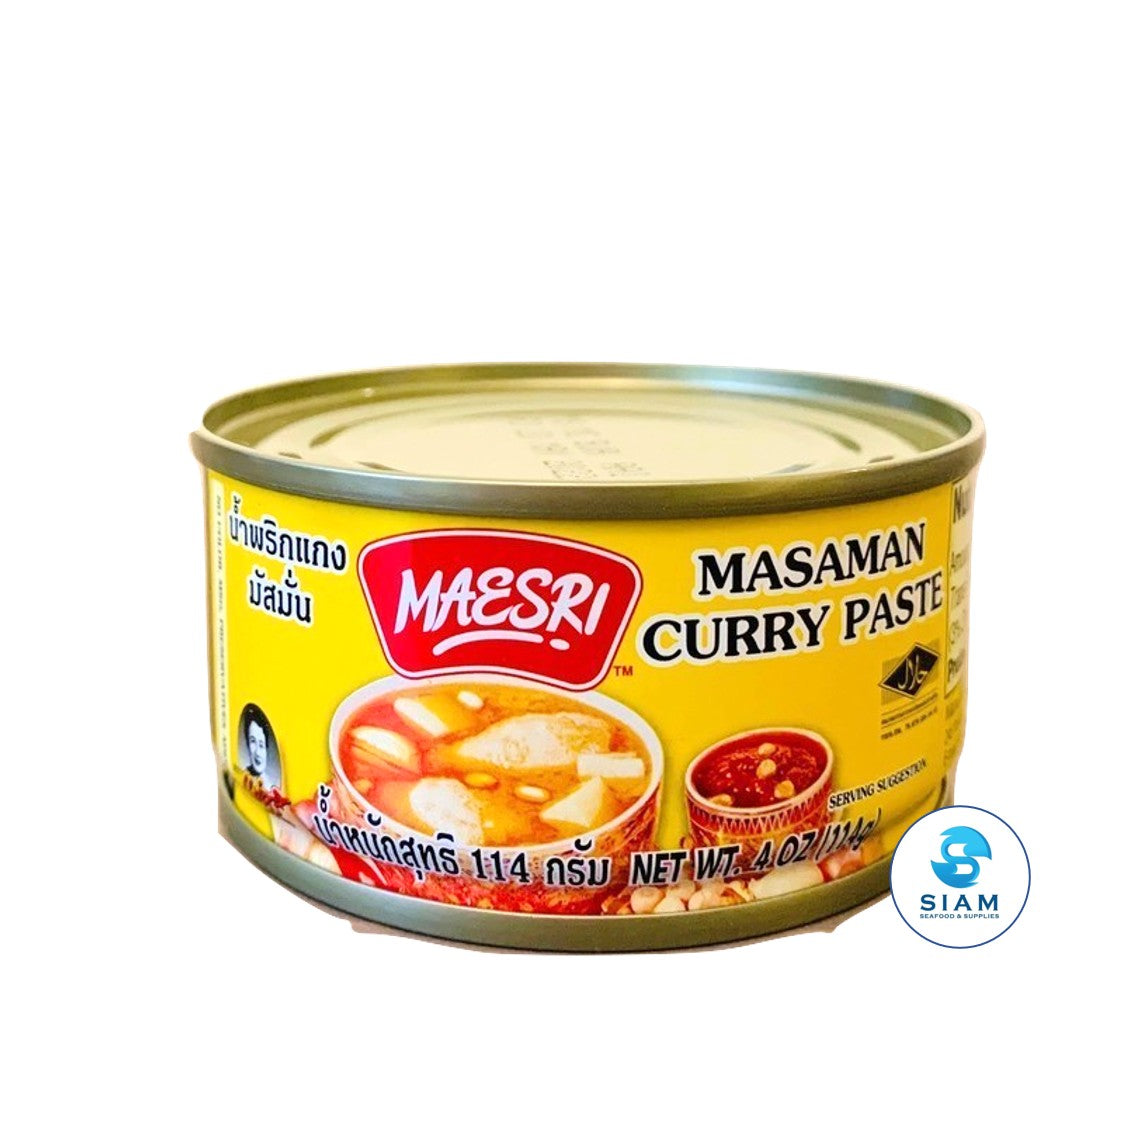 (Case) Massaman Curry Paste - Maesri (4 oz x 48 per case) น้ำพริกแกงมัสมั่น แม่ศรี แบบยกลัง MaeSri